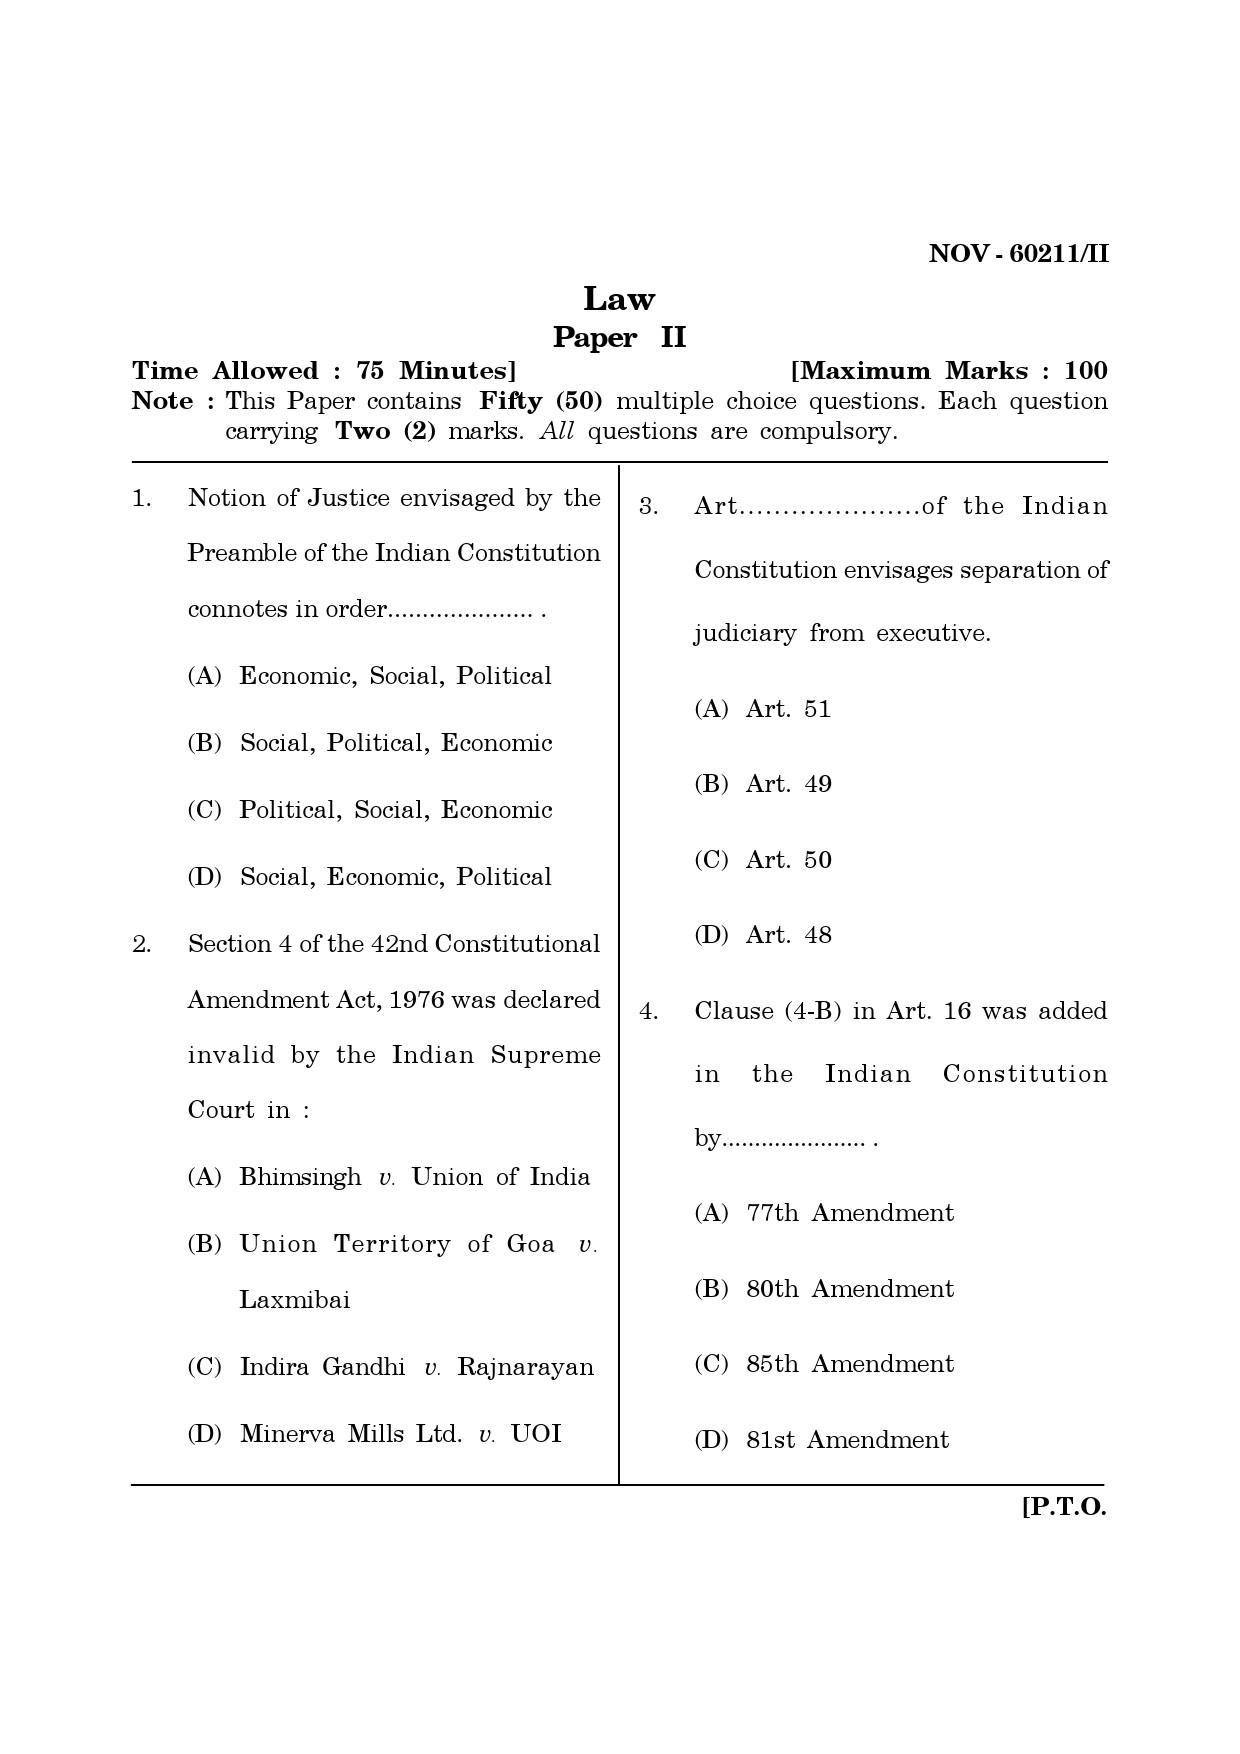 Maharashtra SET Law Question Paper II November 2011 1